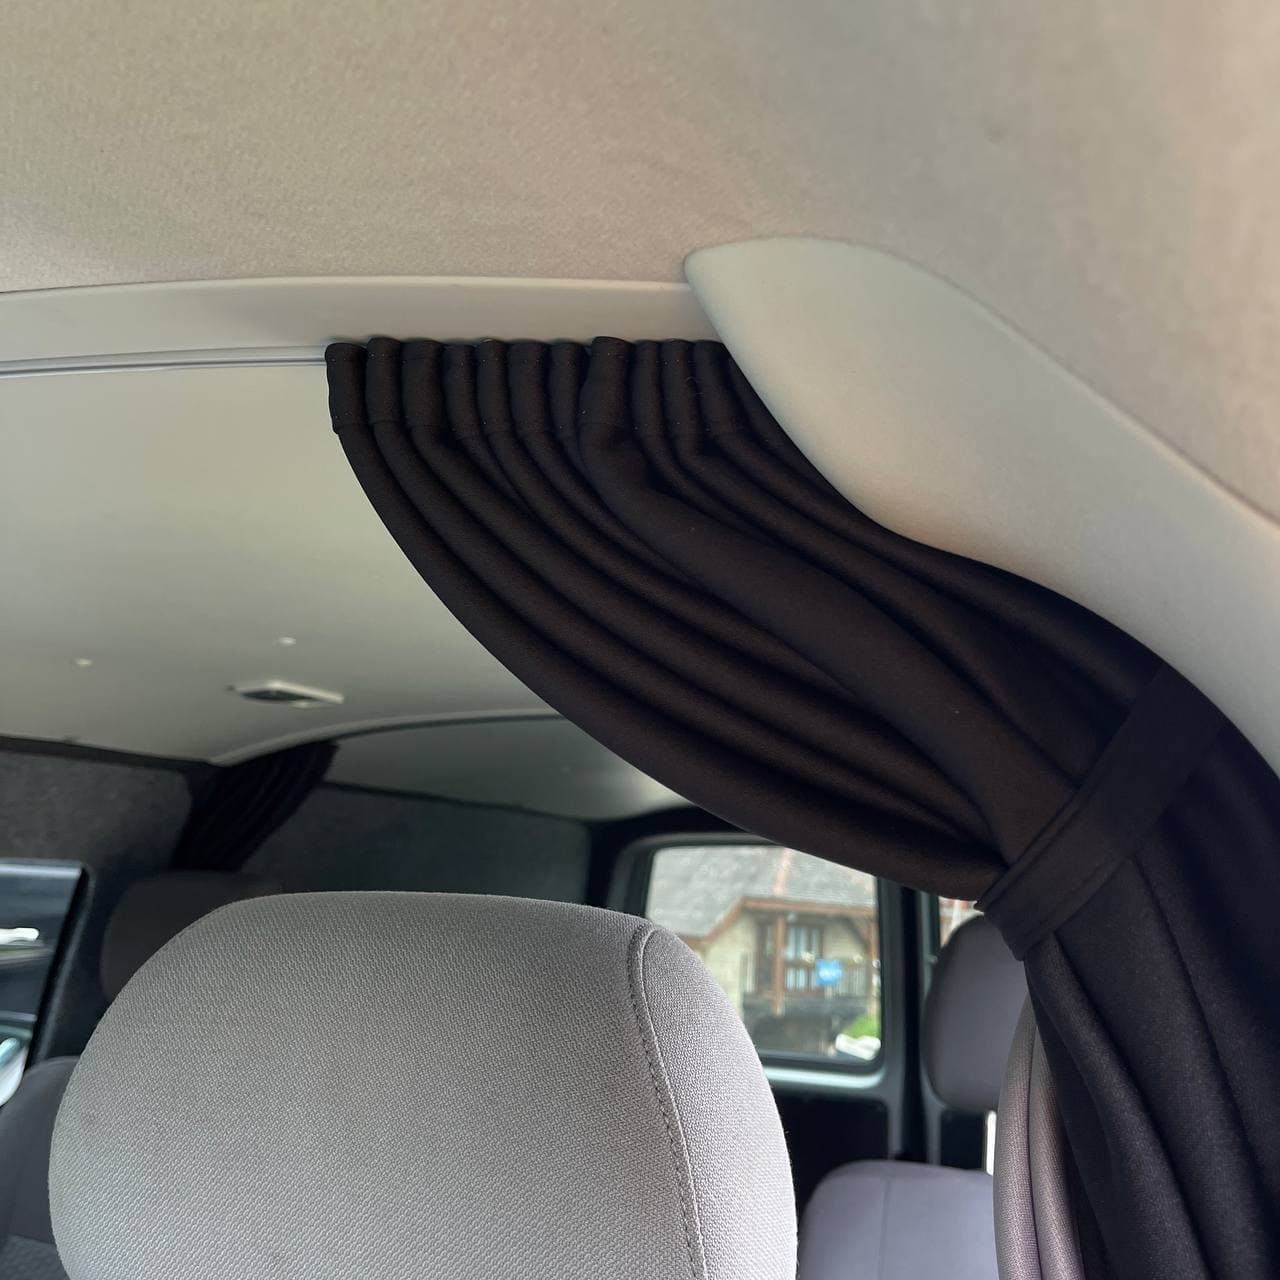 Ford Transit MK7 Cab Divider Curtain Kit